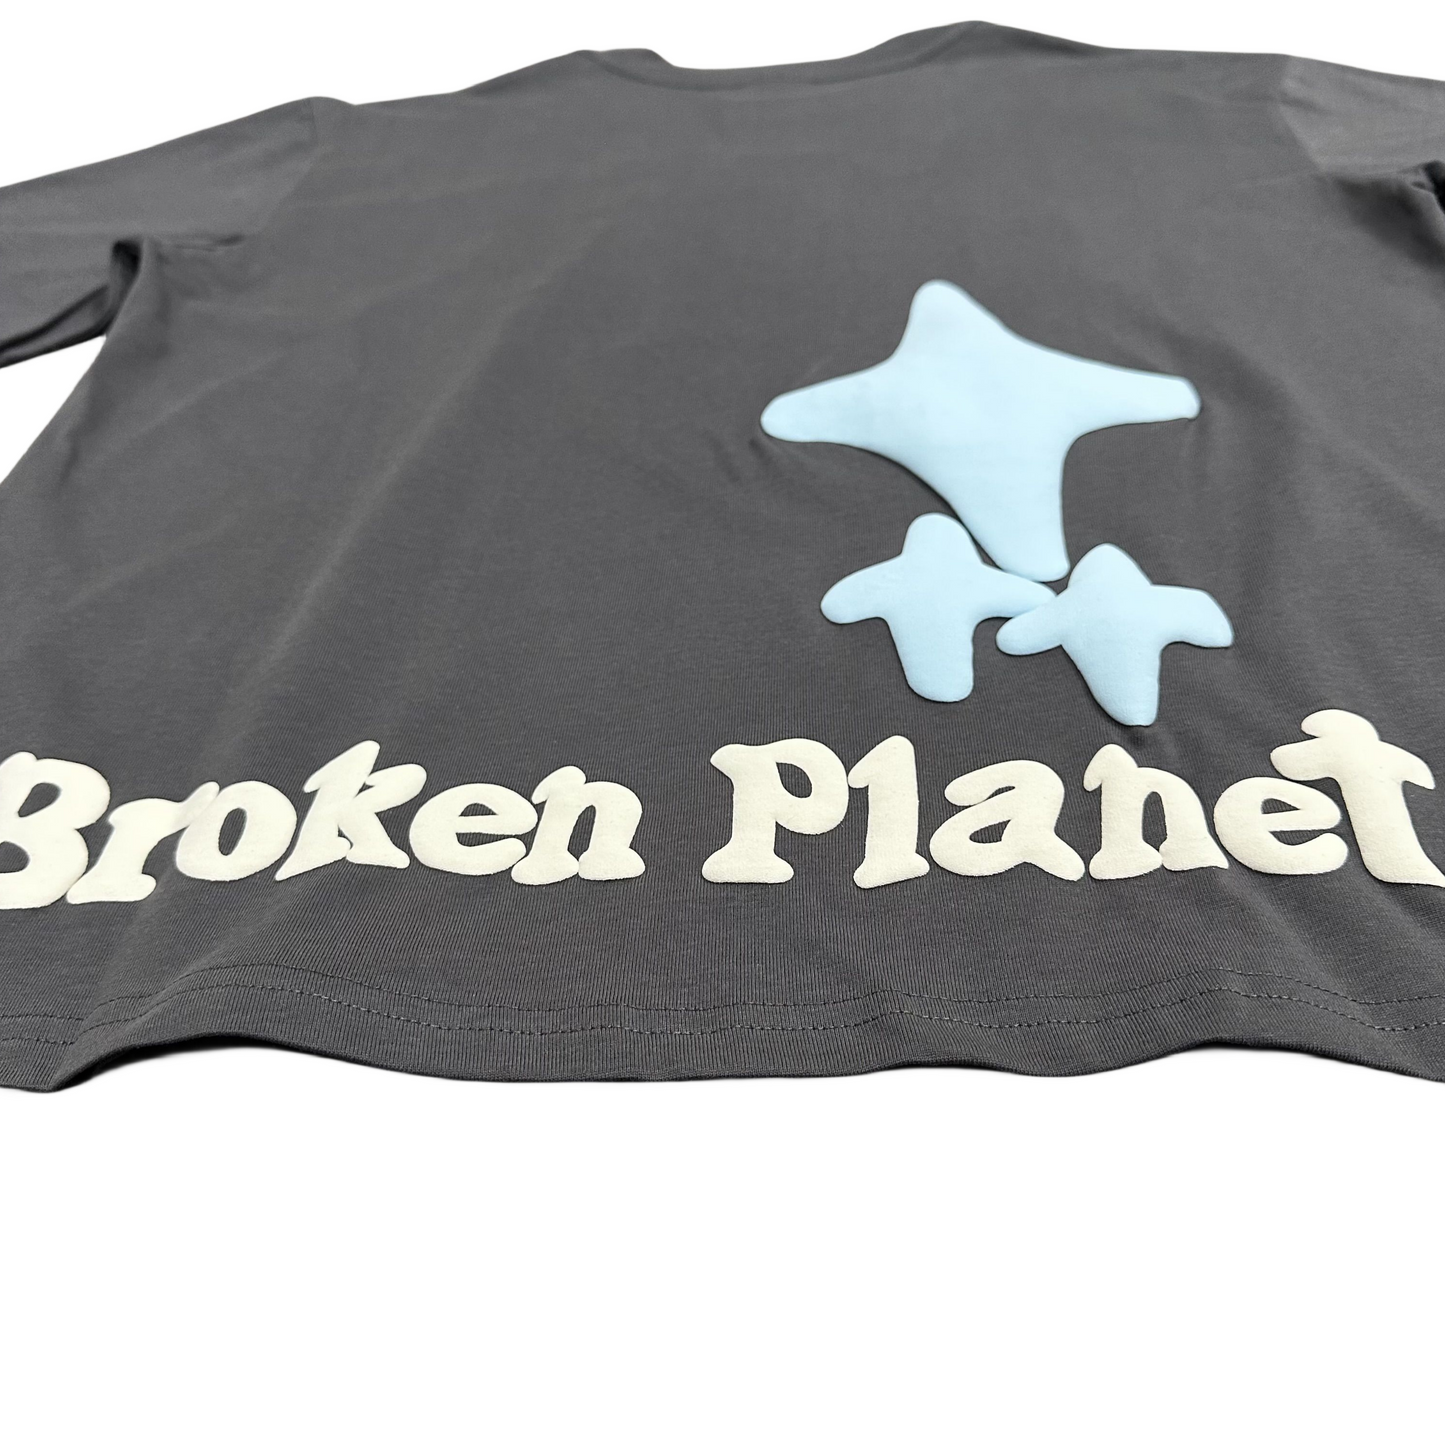 Broken Planet T-shirt femme homme 'dans l'abîme' Tee